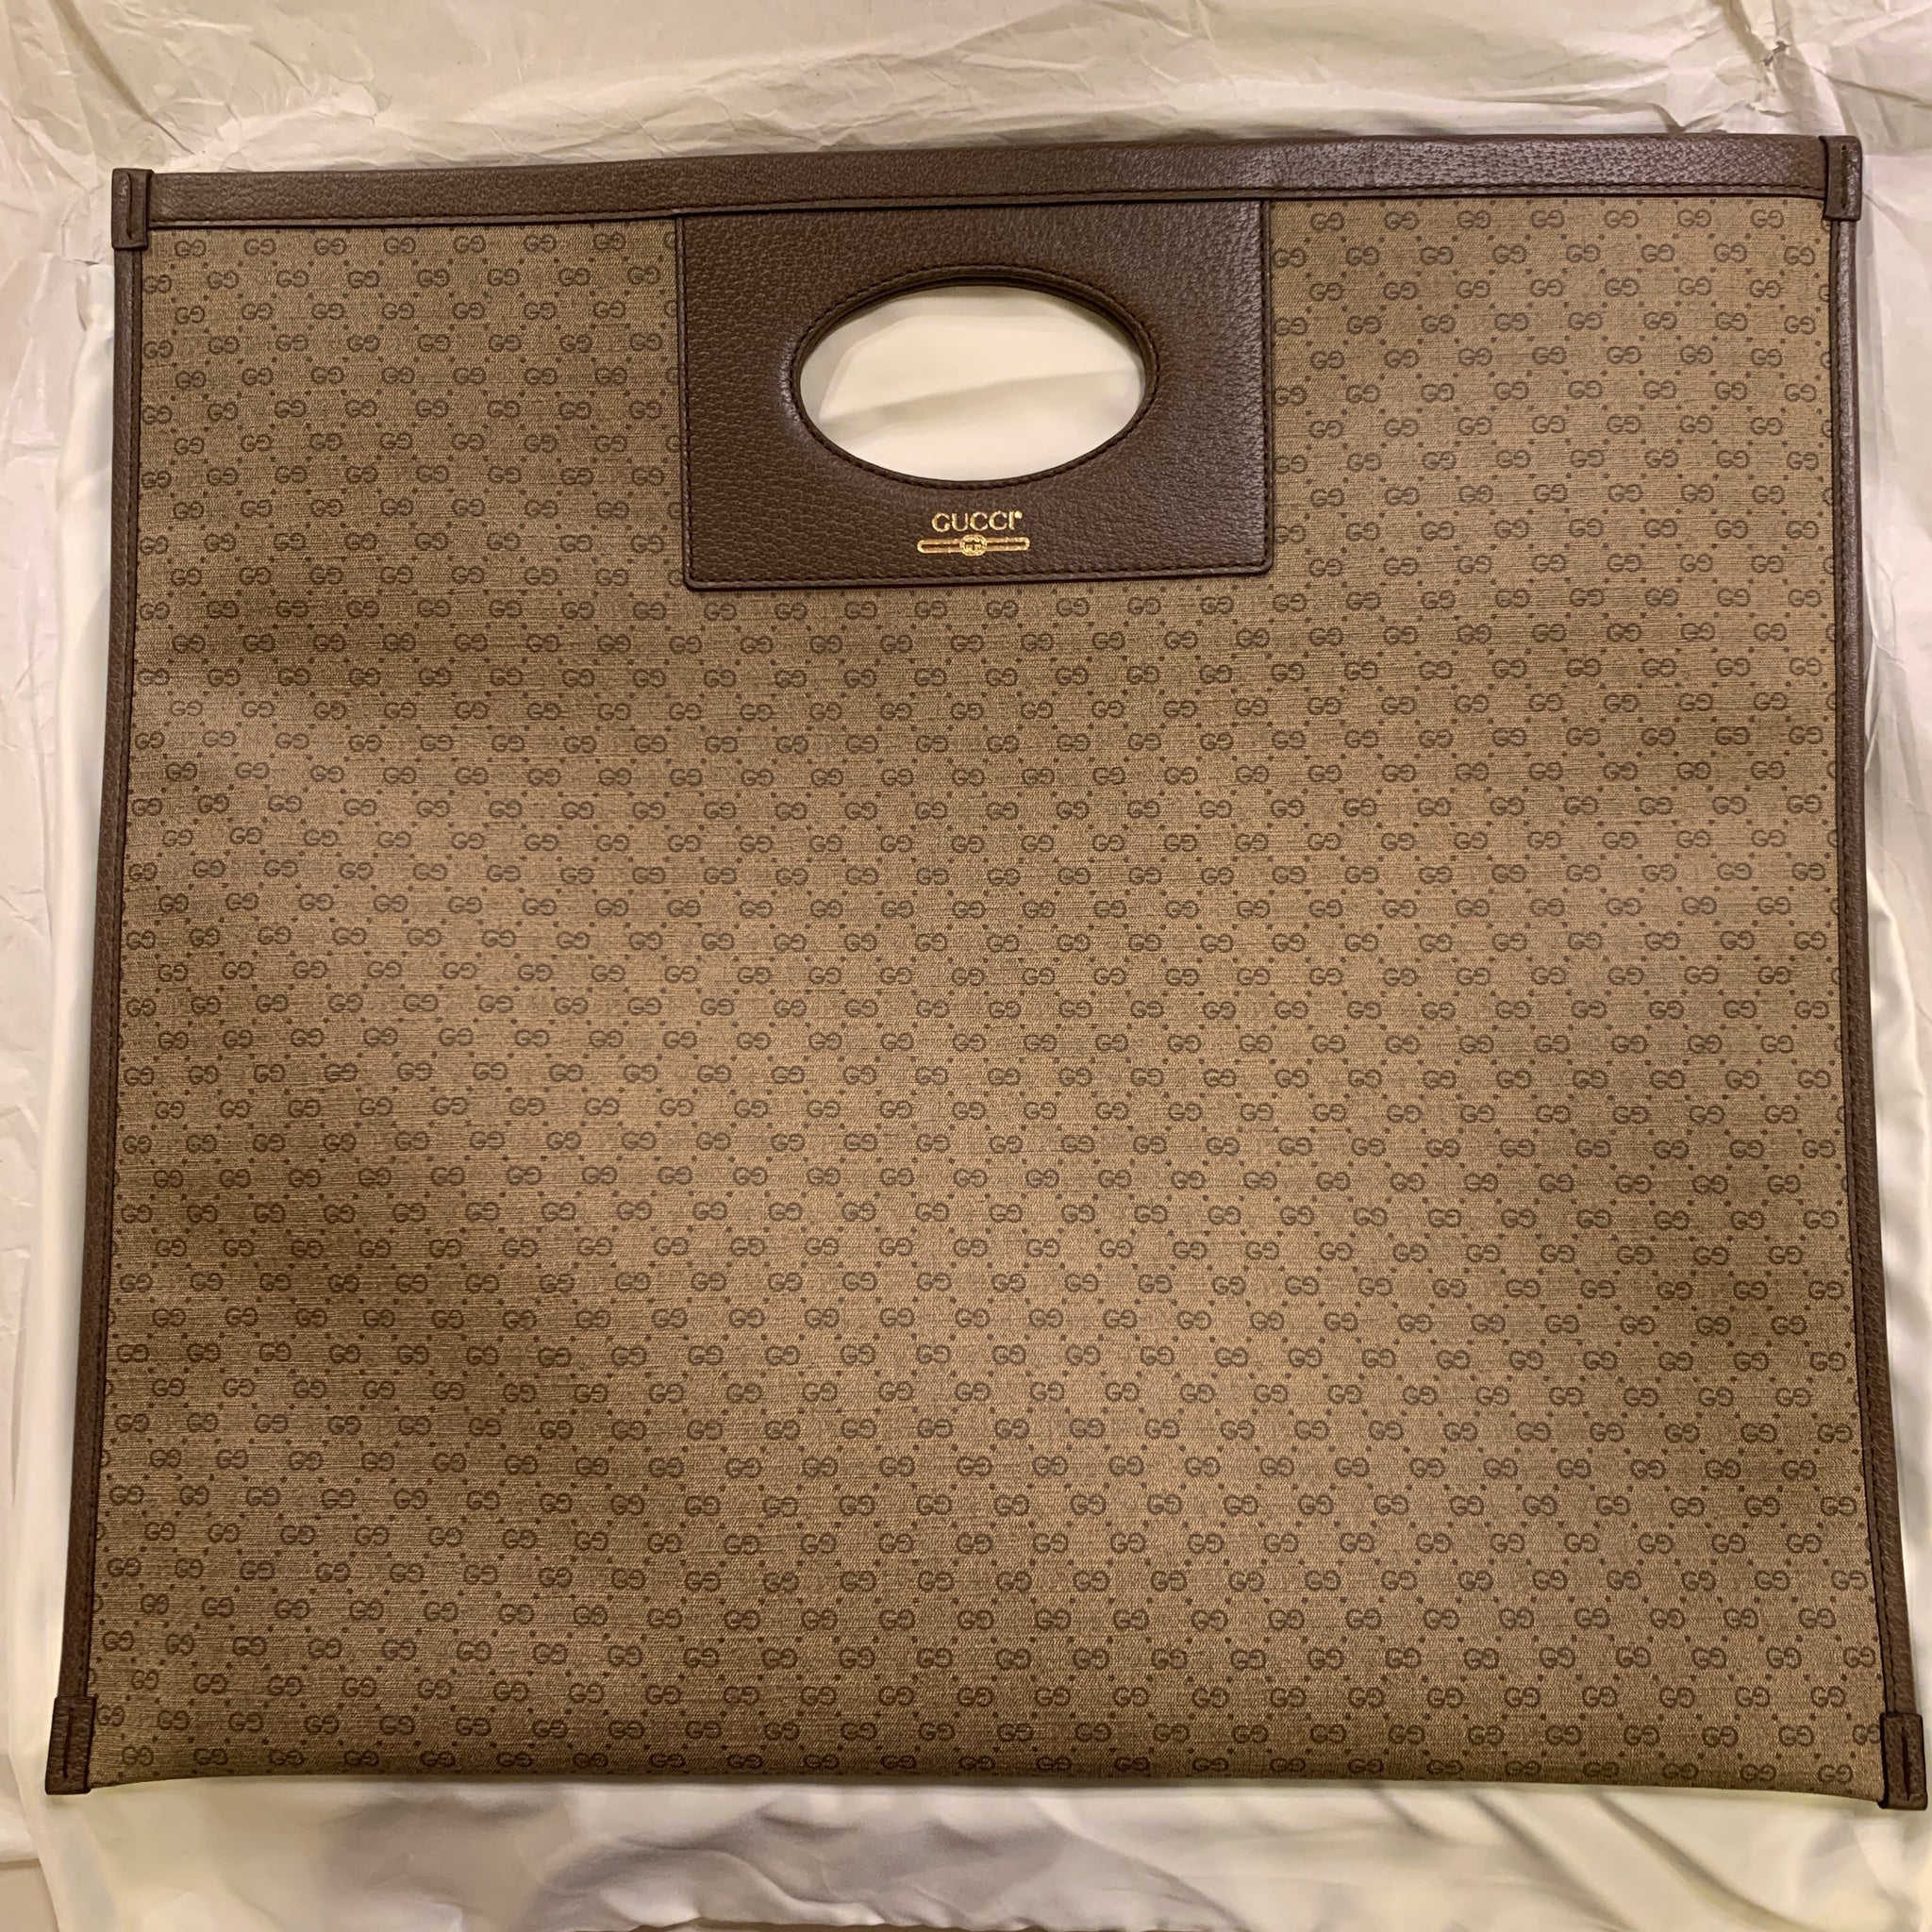 GG Supreme Canvas Mini Tote Bag in Beige - Gucci